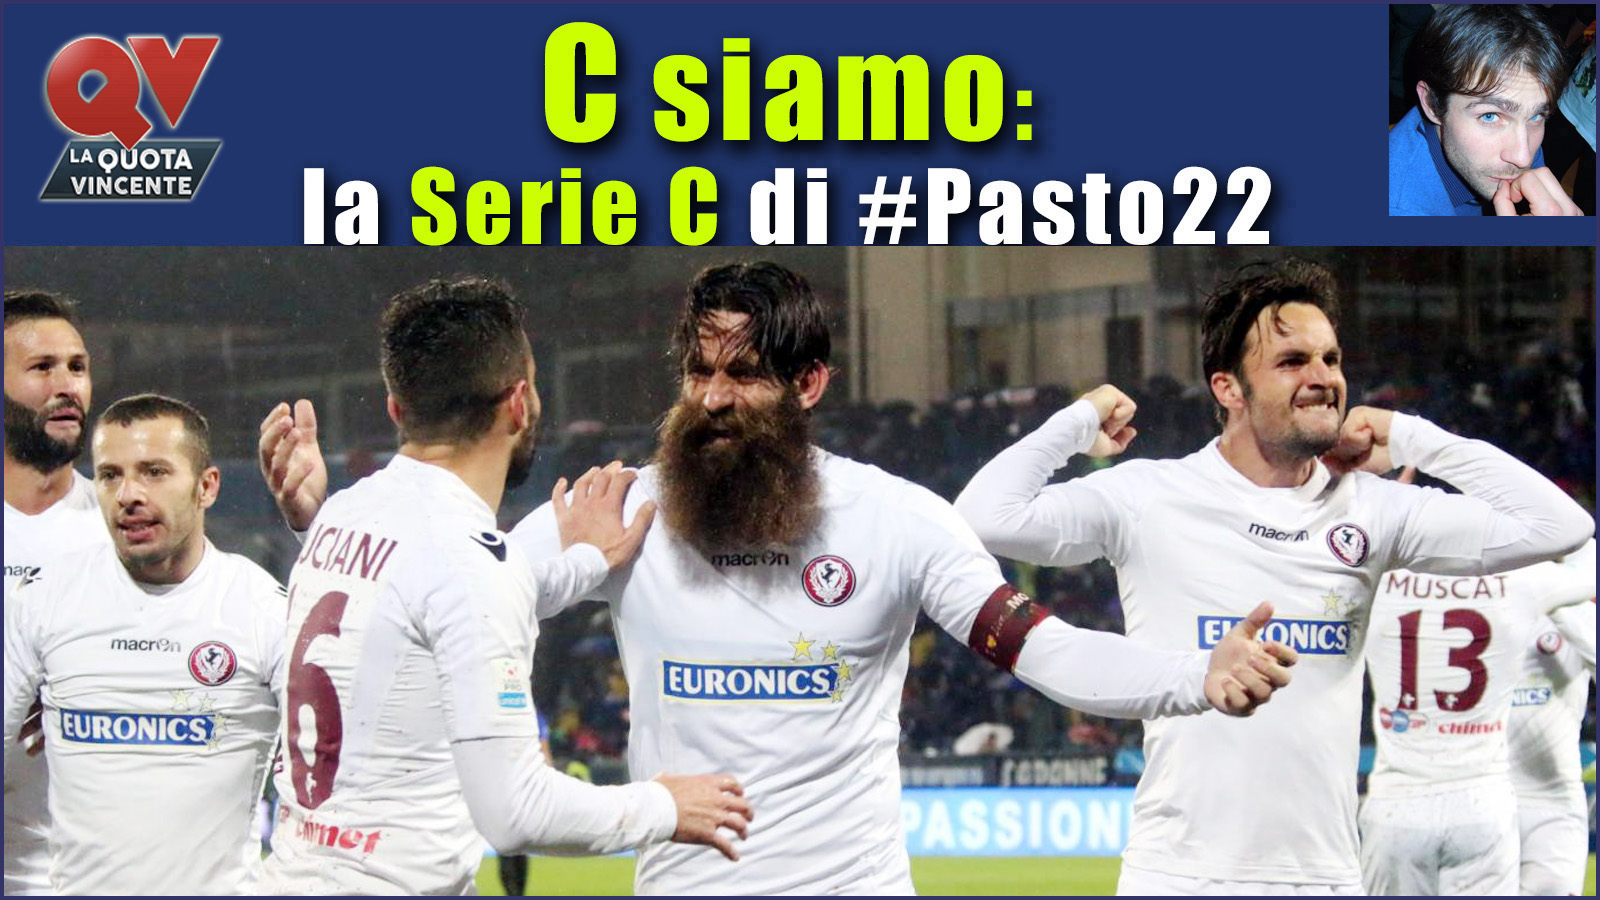 Pronostici Serie C domenica 17 dicembre: #Csiamo, il blog di #Pasto22